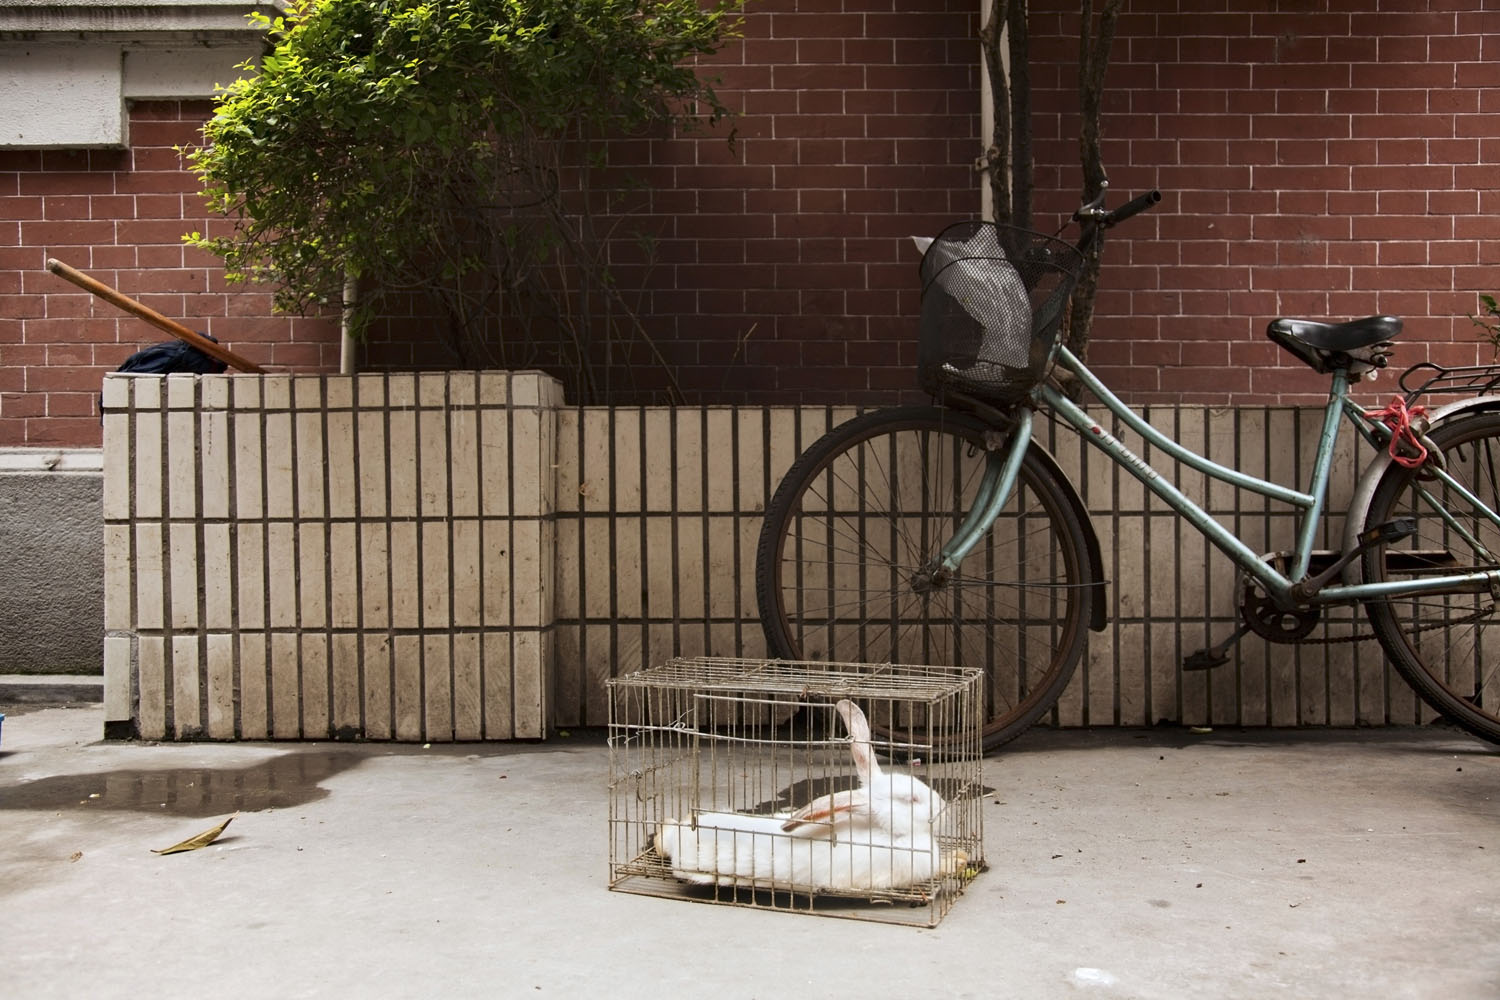 Caged white rabbit. Shanghai, China. 2012.